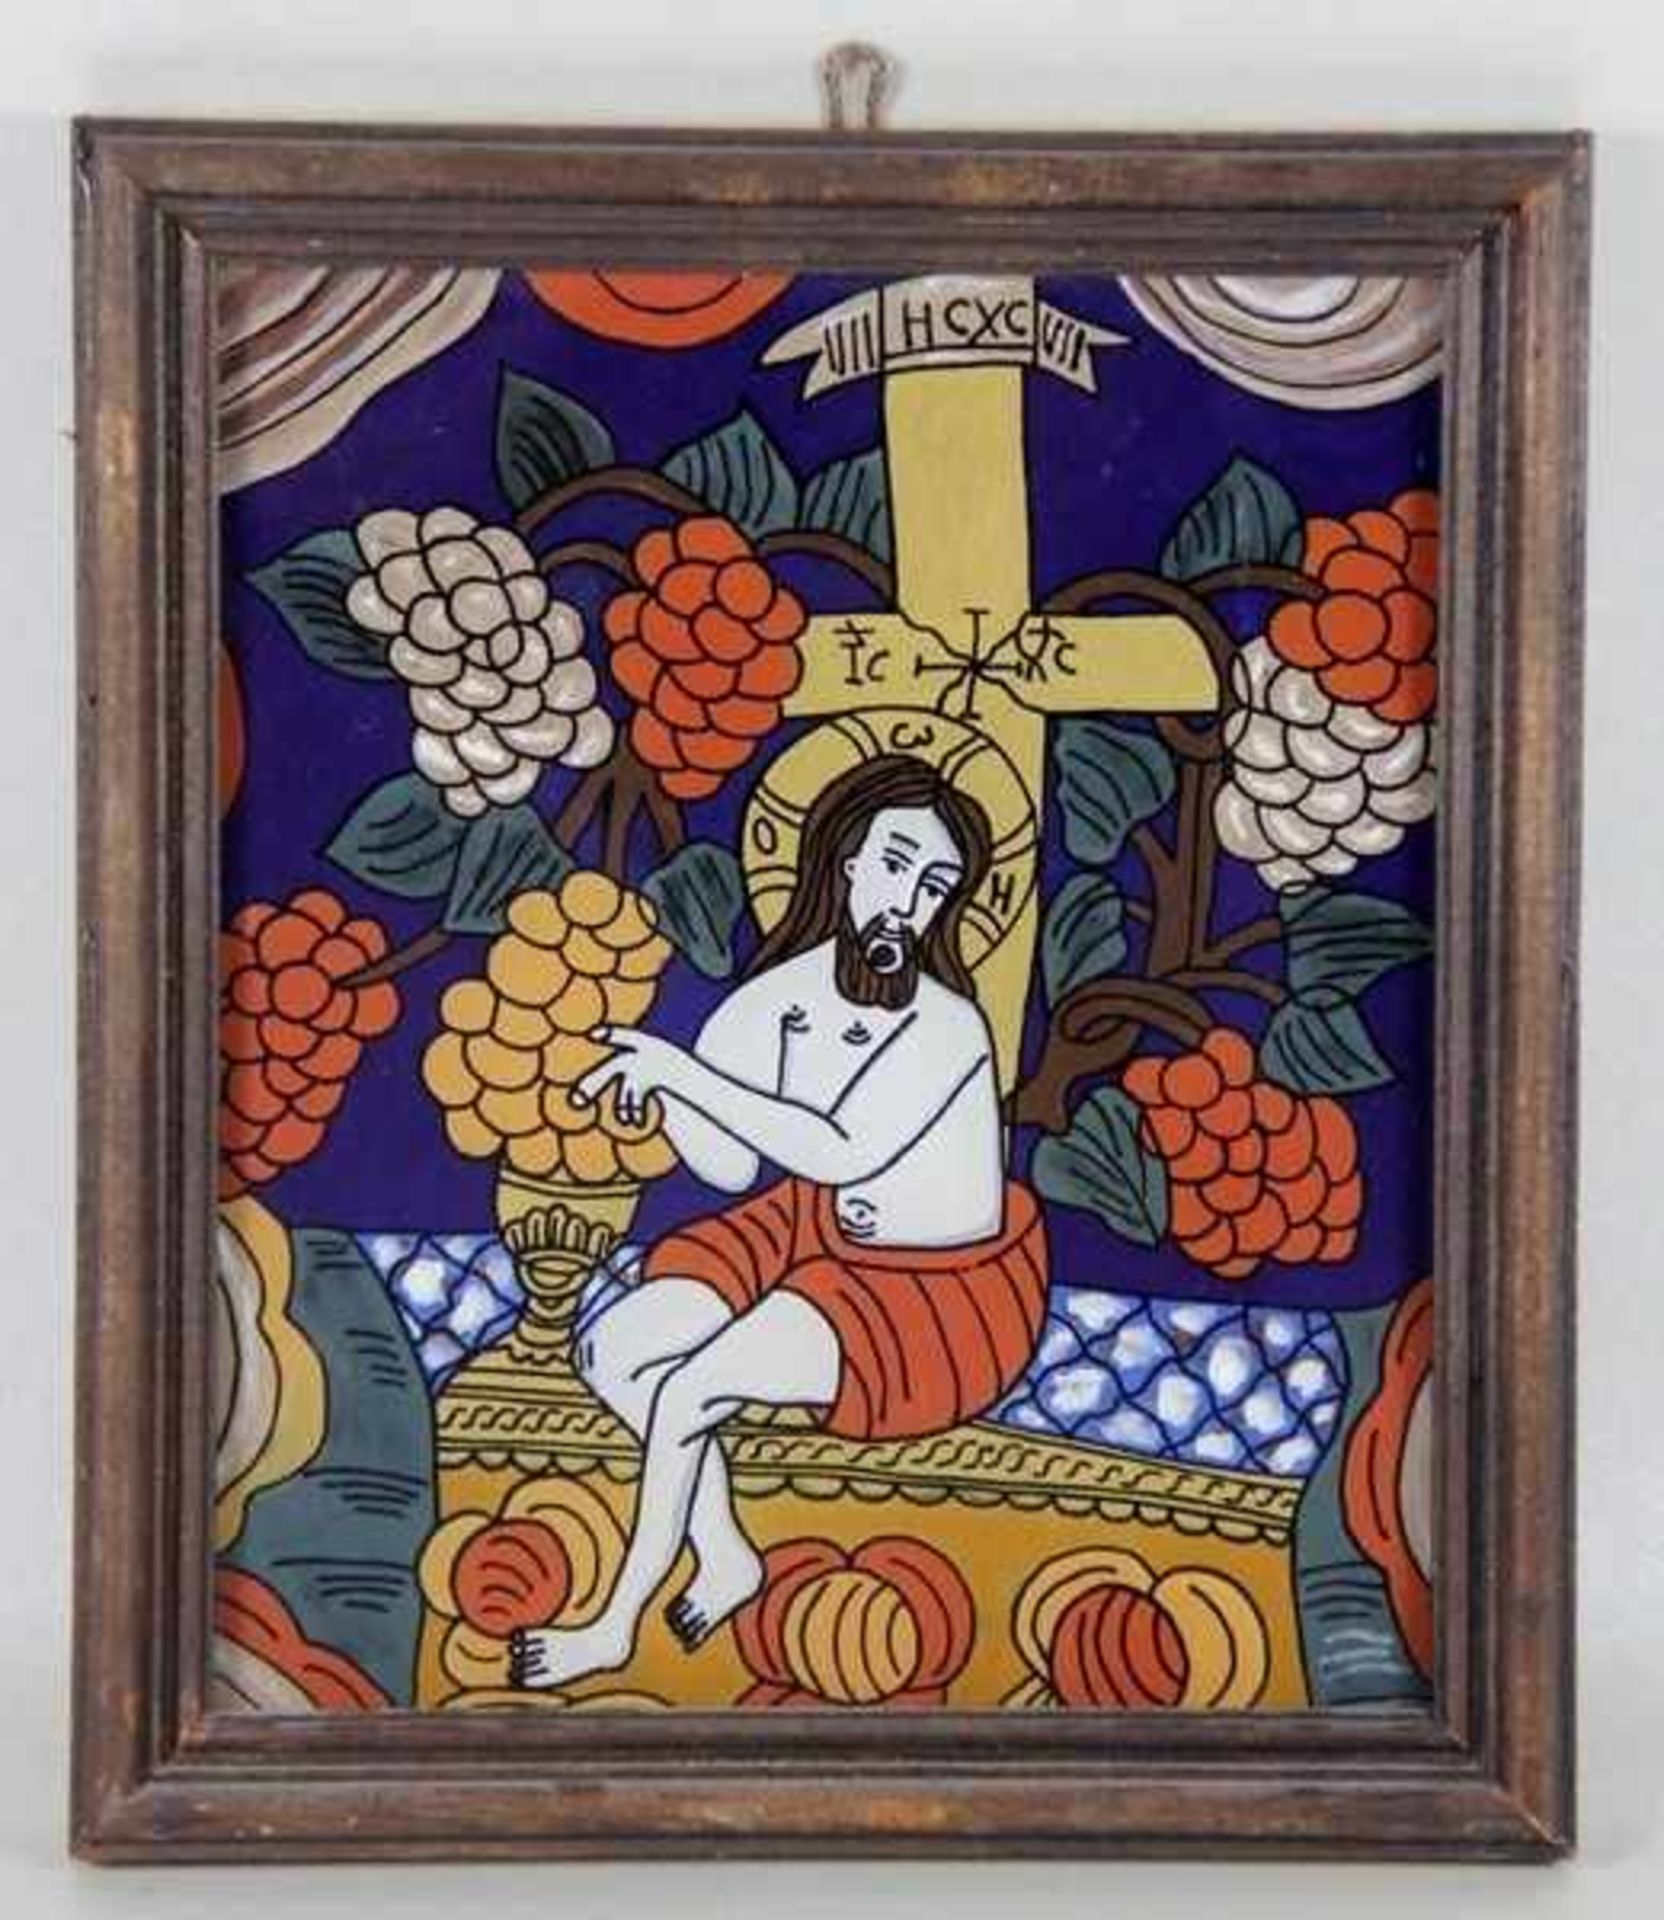 Hinterglasbildwohl Rumänien, sitzender Christus umgeben von Weinstöcken mit Trauben, hinter ihm